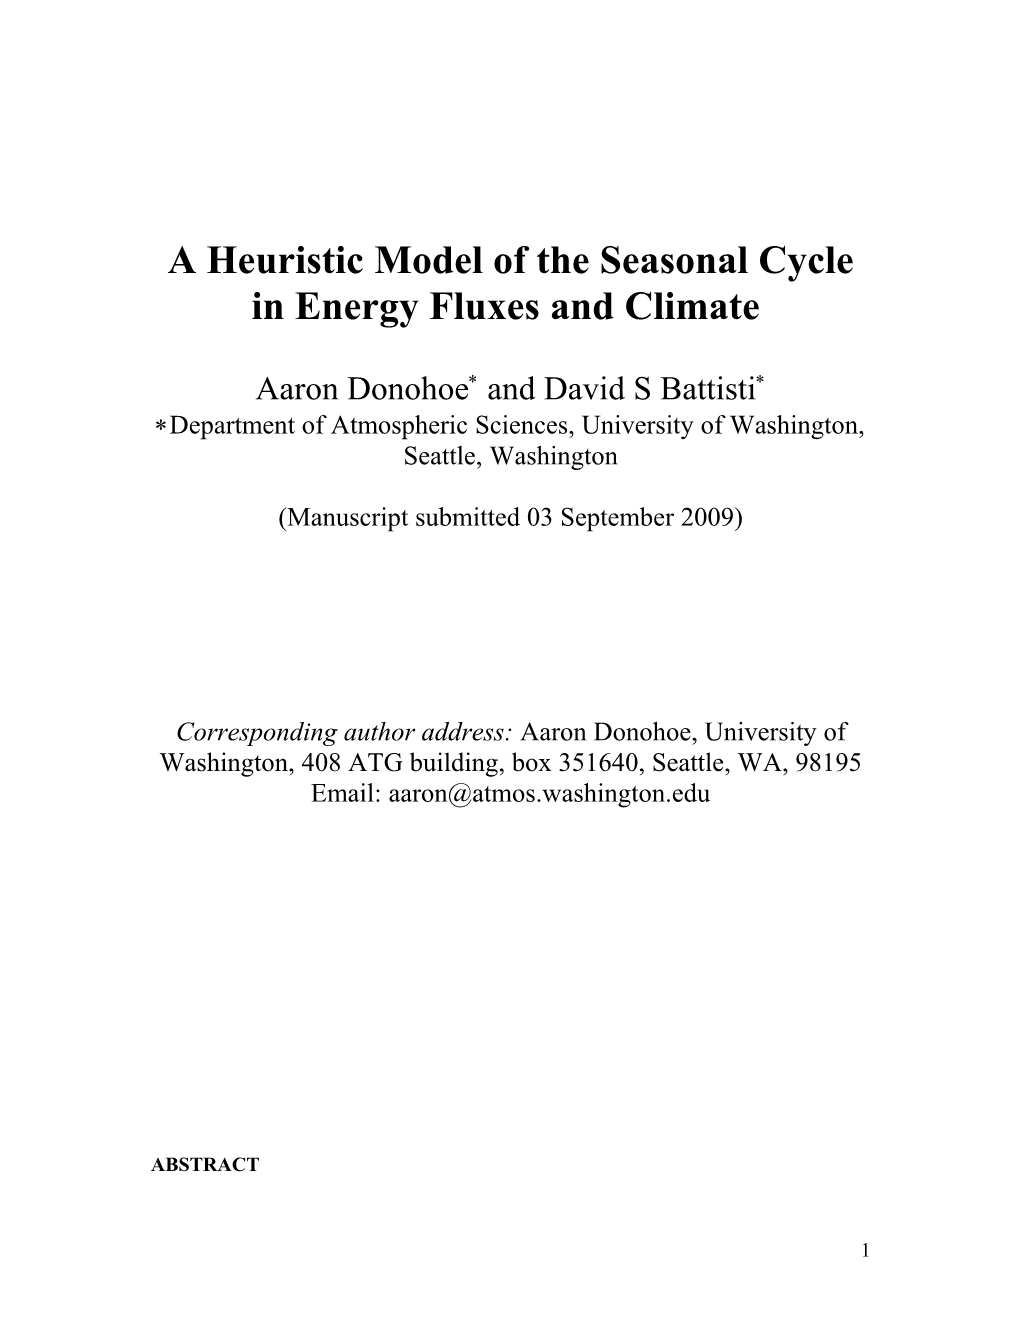 A Didactic Model of Seasonal Energy